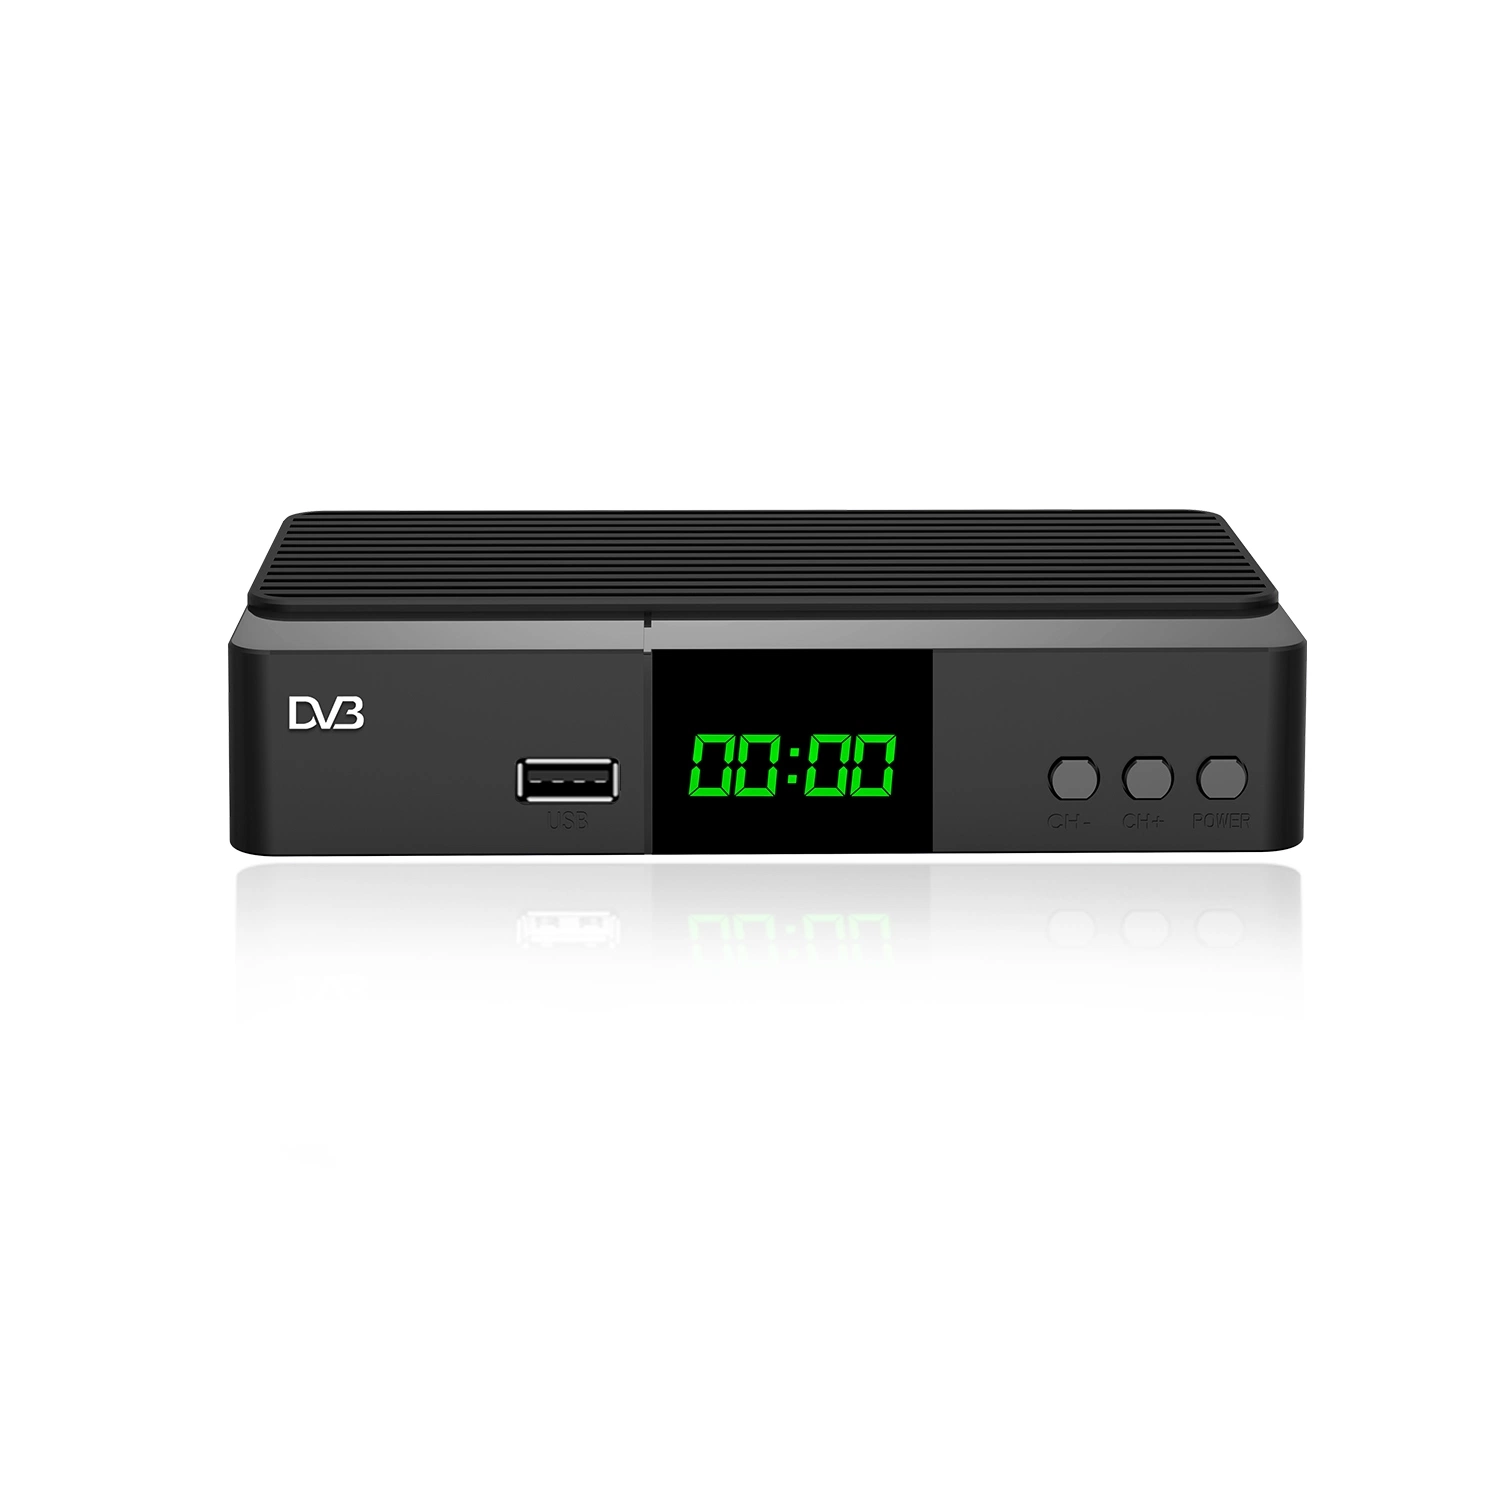 Junuo MPEG 4 1080P descodificador DVB T2 H265 Decodificador H. 265 Hevc DESCODIFICADOR DE TV2 SCART DVBT WiFi receptor de TV Digital DVB-T2 para o mercado italiano